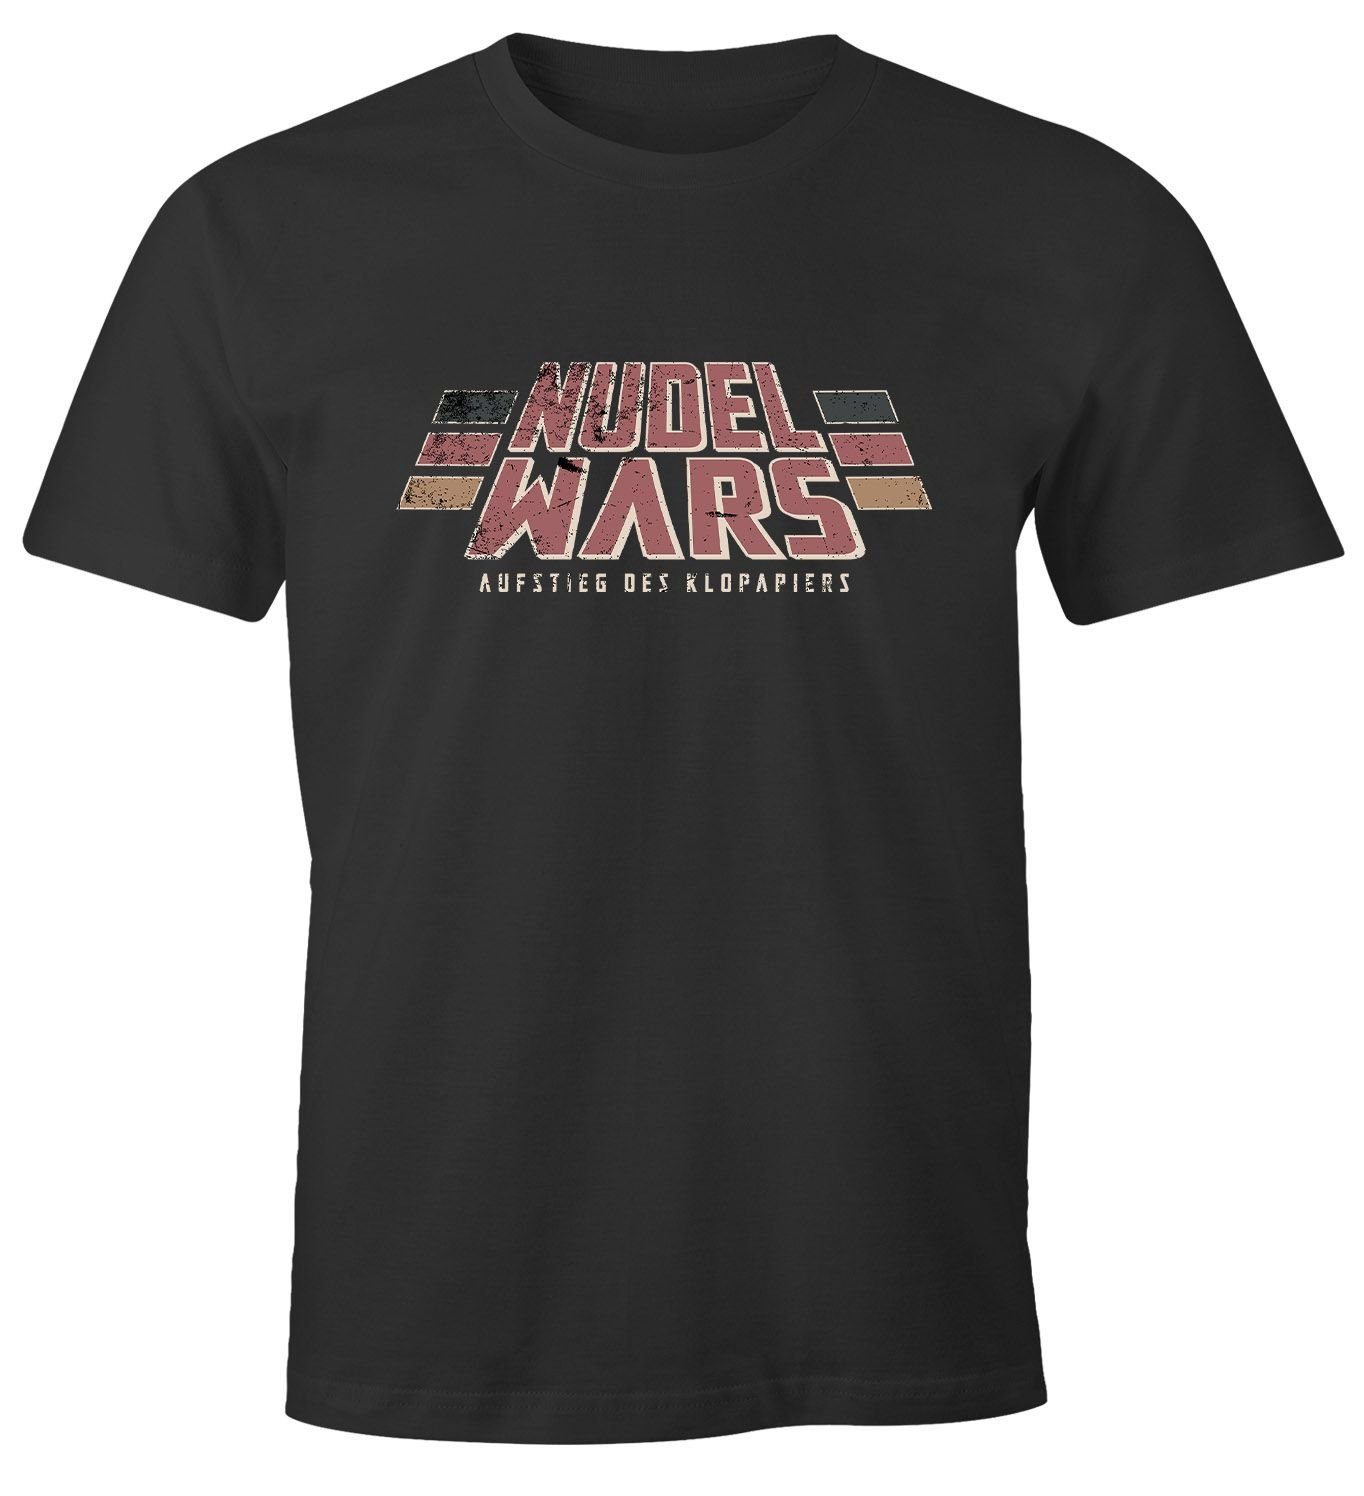 MoonWorks Print-Shirt Herren T-Shirt Nudel Wars Aufstieg des Klopapiers Sci Fi Parodie Hamstern Fun-Shirt Spruch lustig Moonworks® mit Print